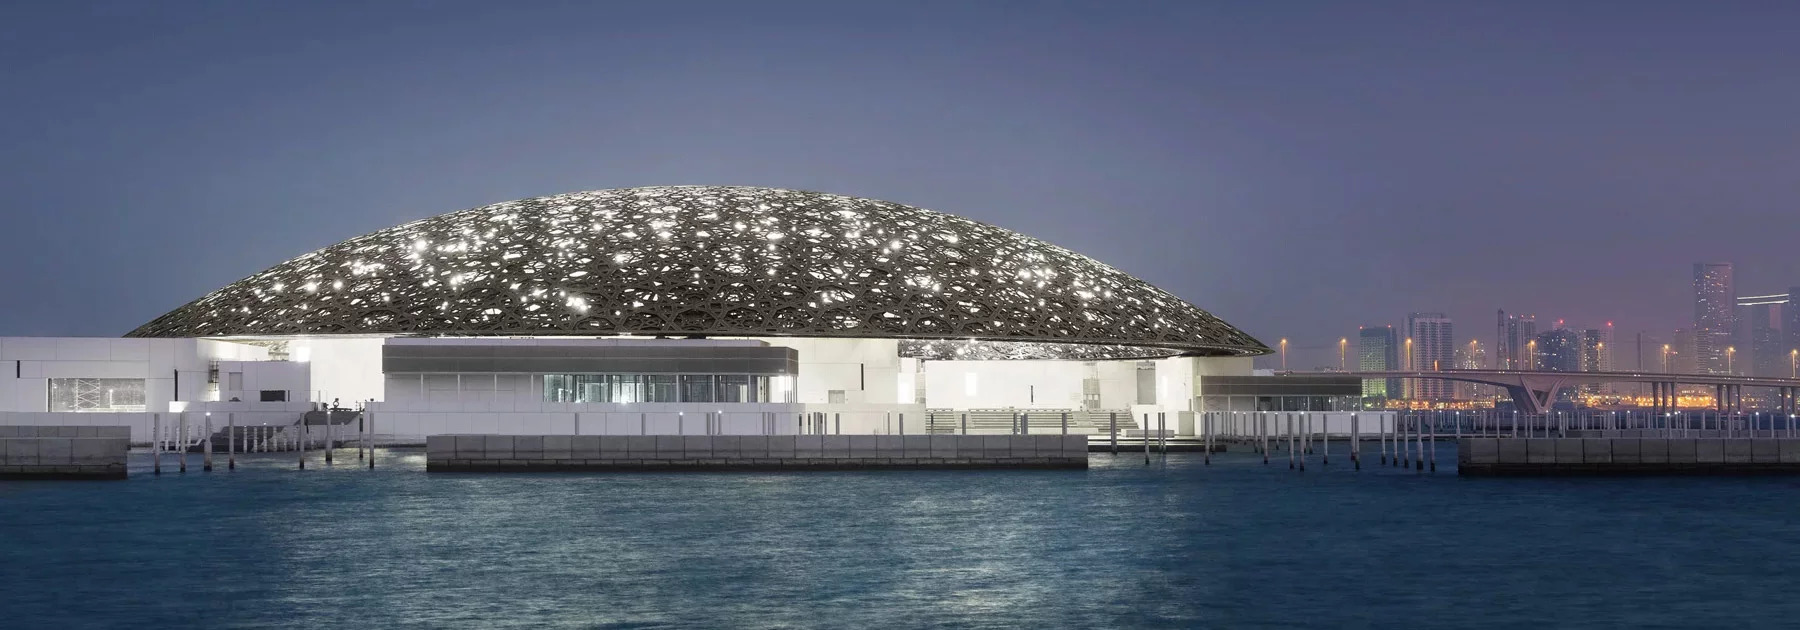 Gli austriaci che hanno realizzato la cupola del Louvre di Abu Dhabi annunciano l'insolvenza dopo il rifiuto del museo a onorare completamente la parcella